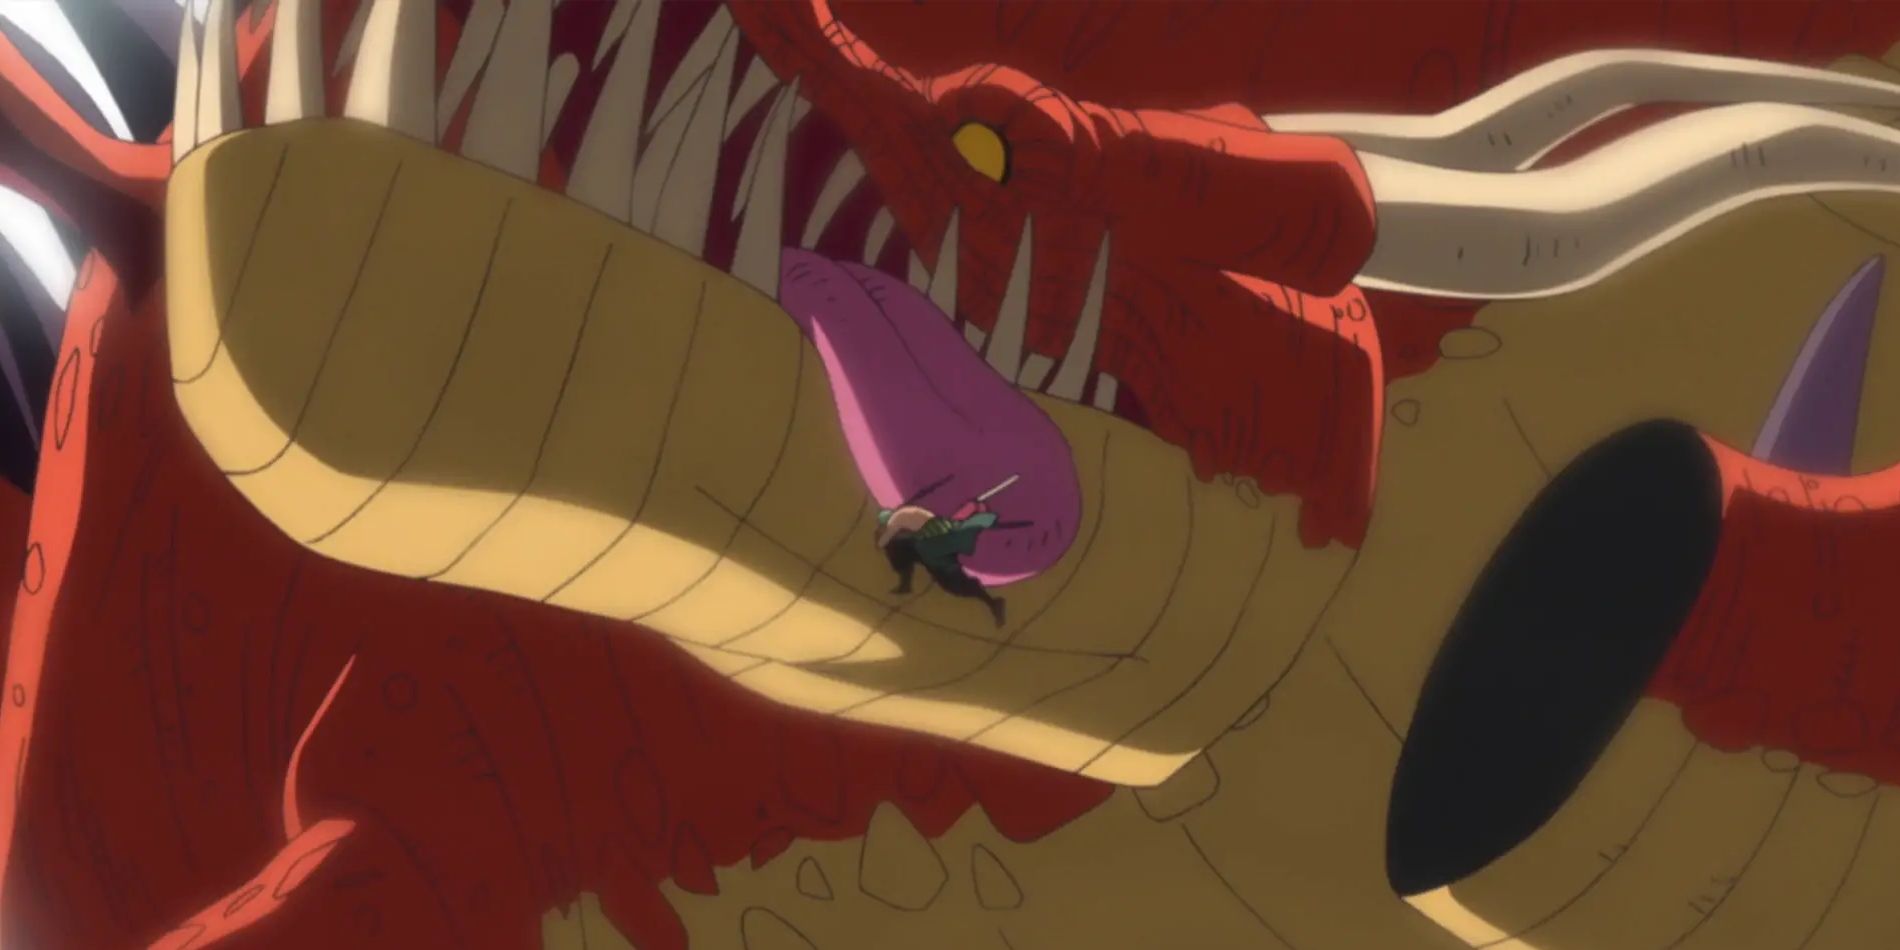 Zoro cuts a dragon into pieces